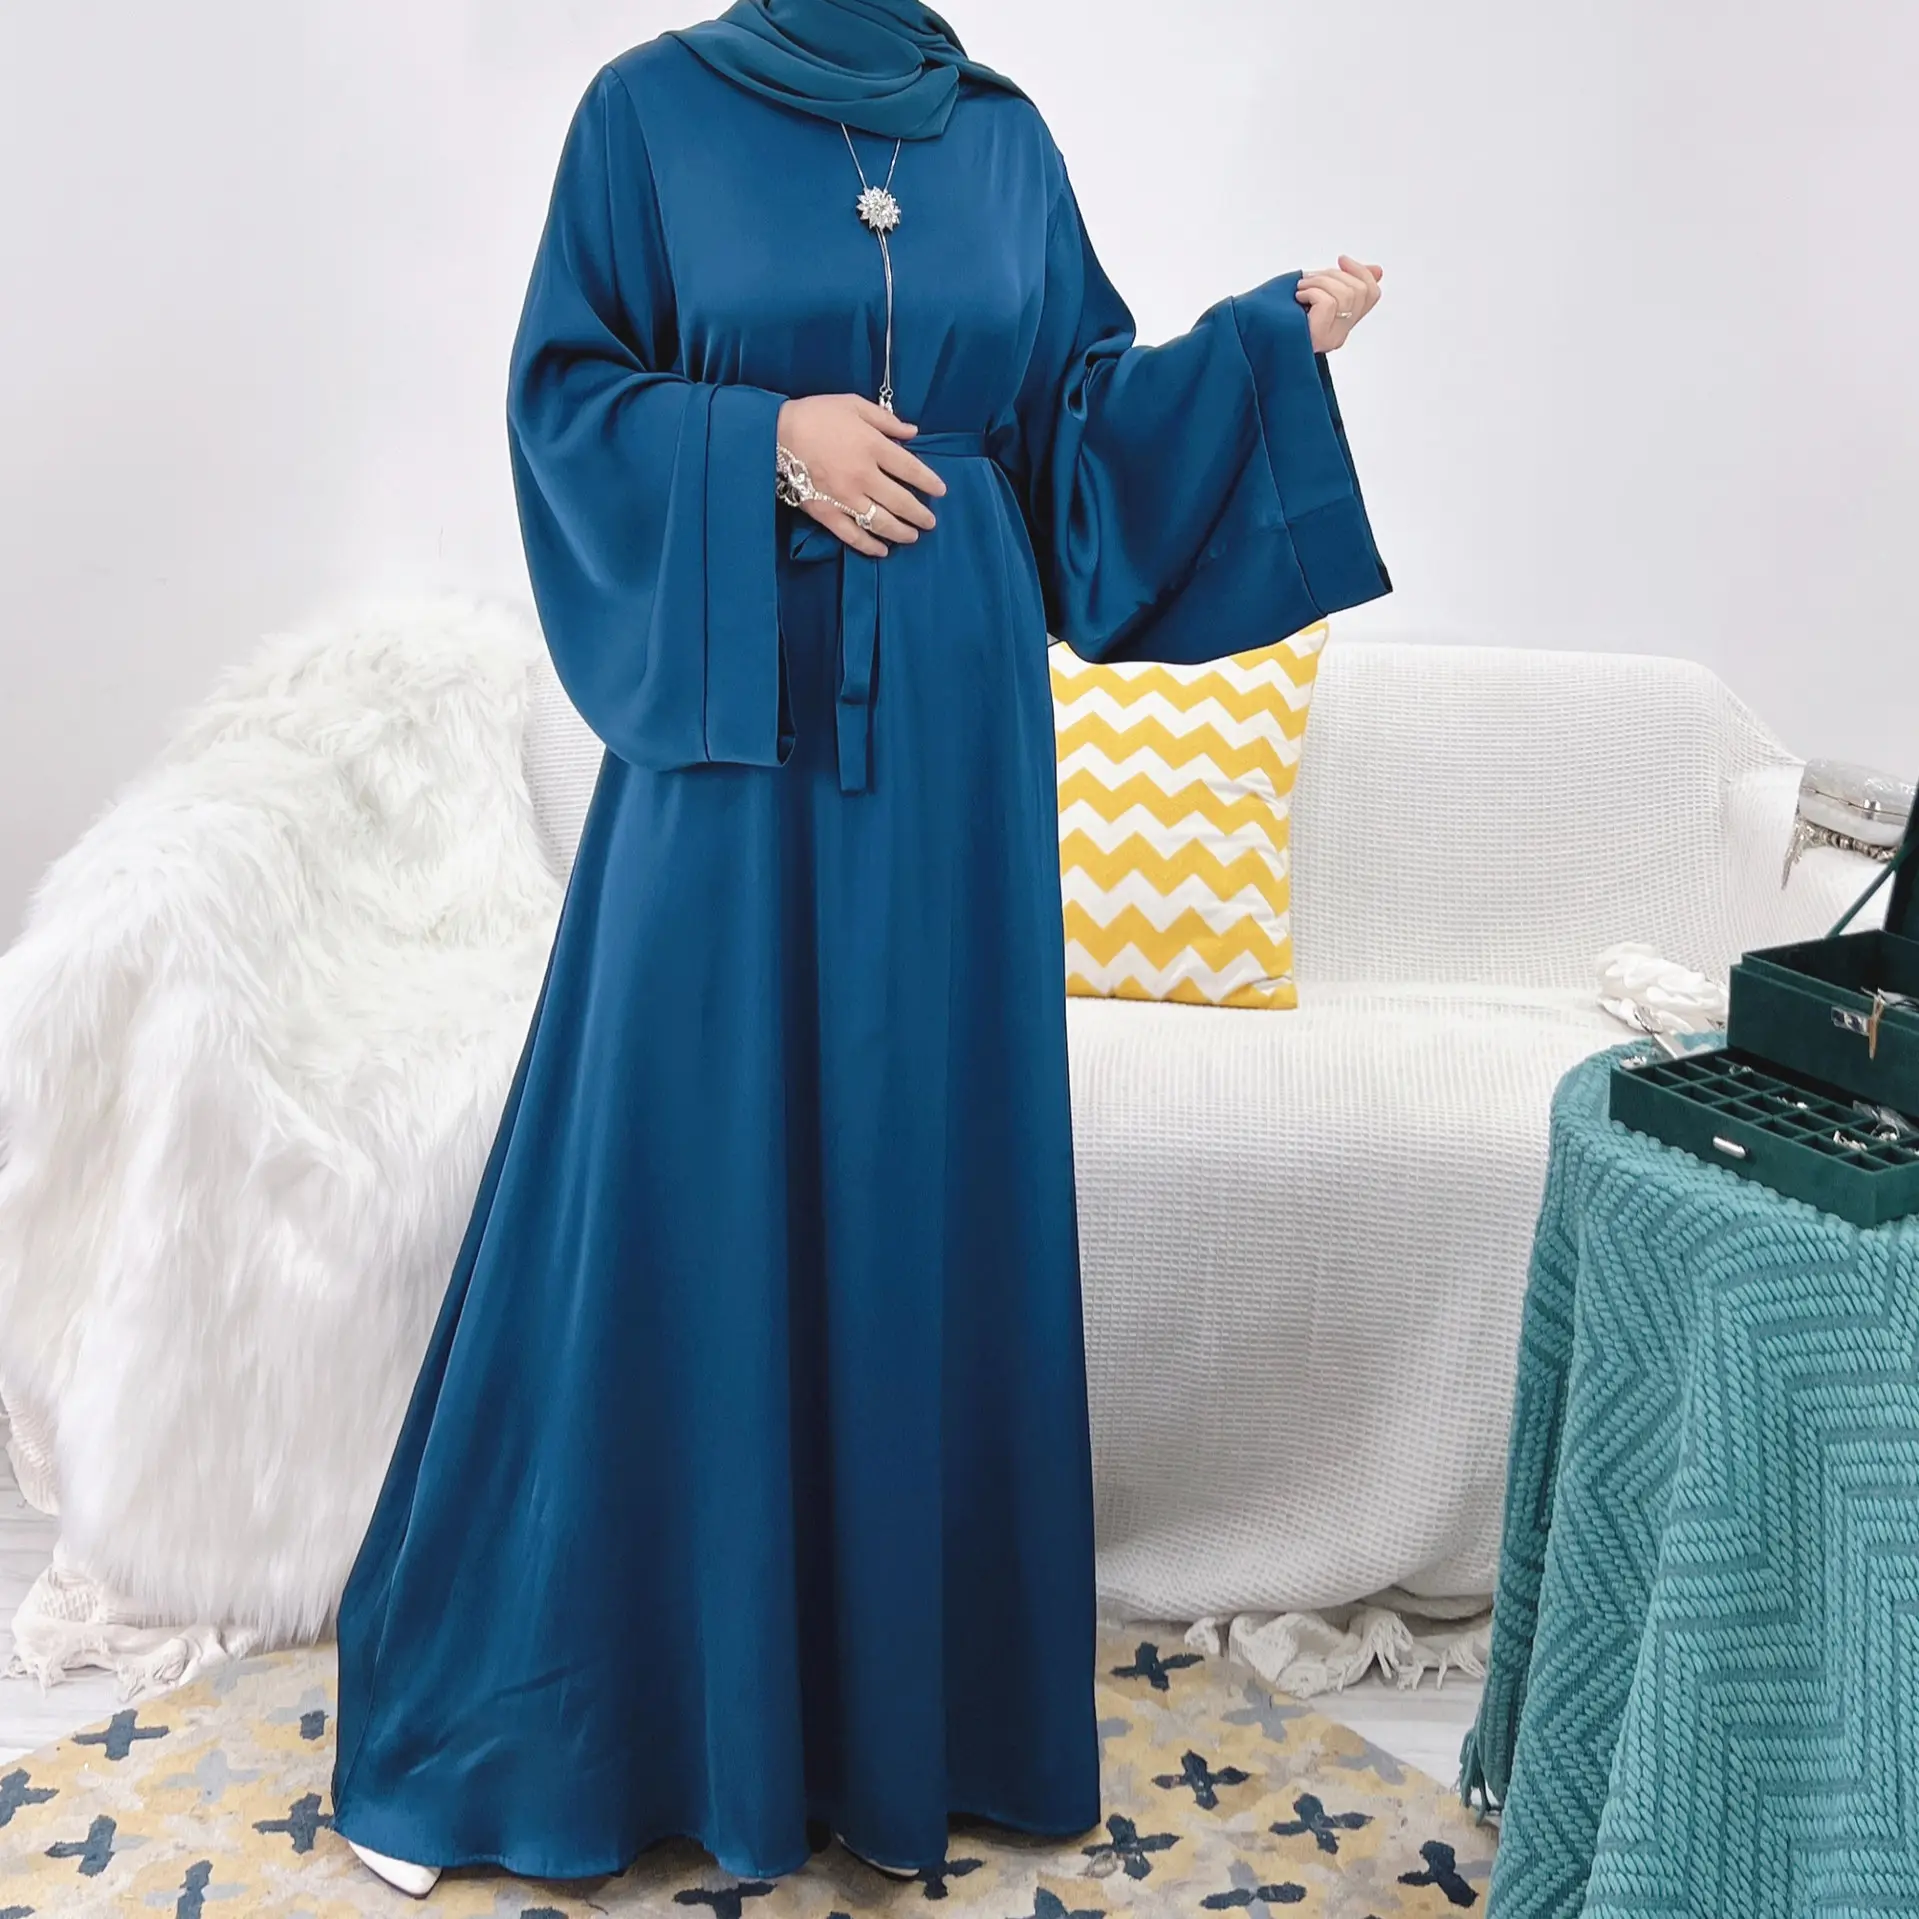 L-16 2023 Rắn Màu Dubai Thổ Nhĩ Kỳ Hồi Giáo Ăn Mặc Hồi Giáo Quần Áo khiêm tốn Thời Trang Hồi Giáo Phụ Nữ Ăn Mặc Abaya Ăn Mặc Với Hijab